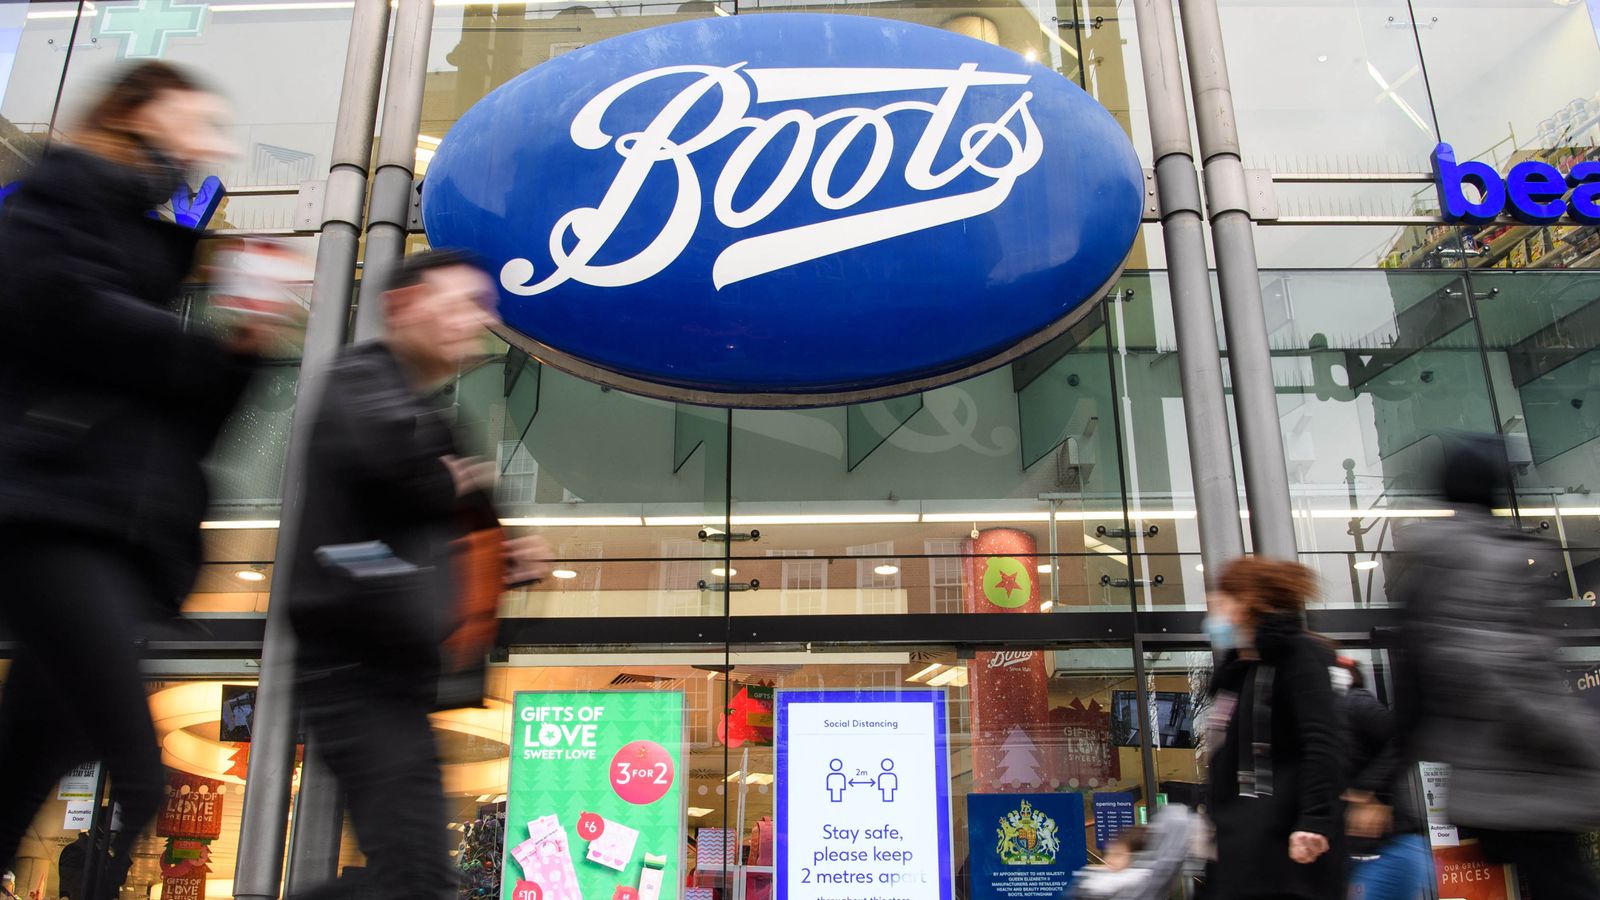 Pemilik sepatu bot untuk menjelajahi penjualan rantai toko kimia jalanan terbesar di Inggris |  Berita bisnis